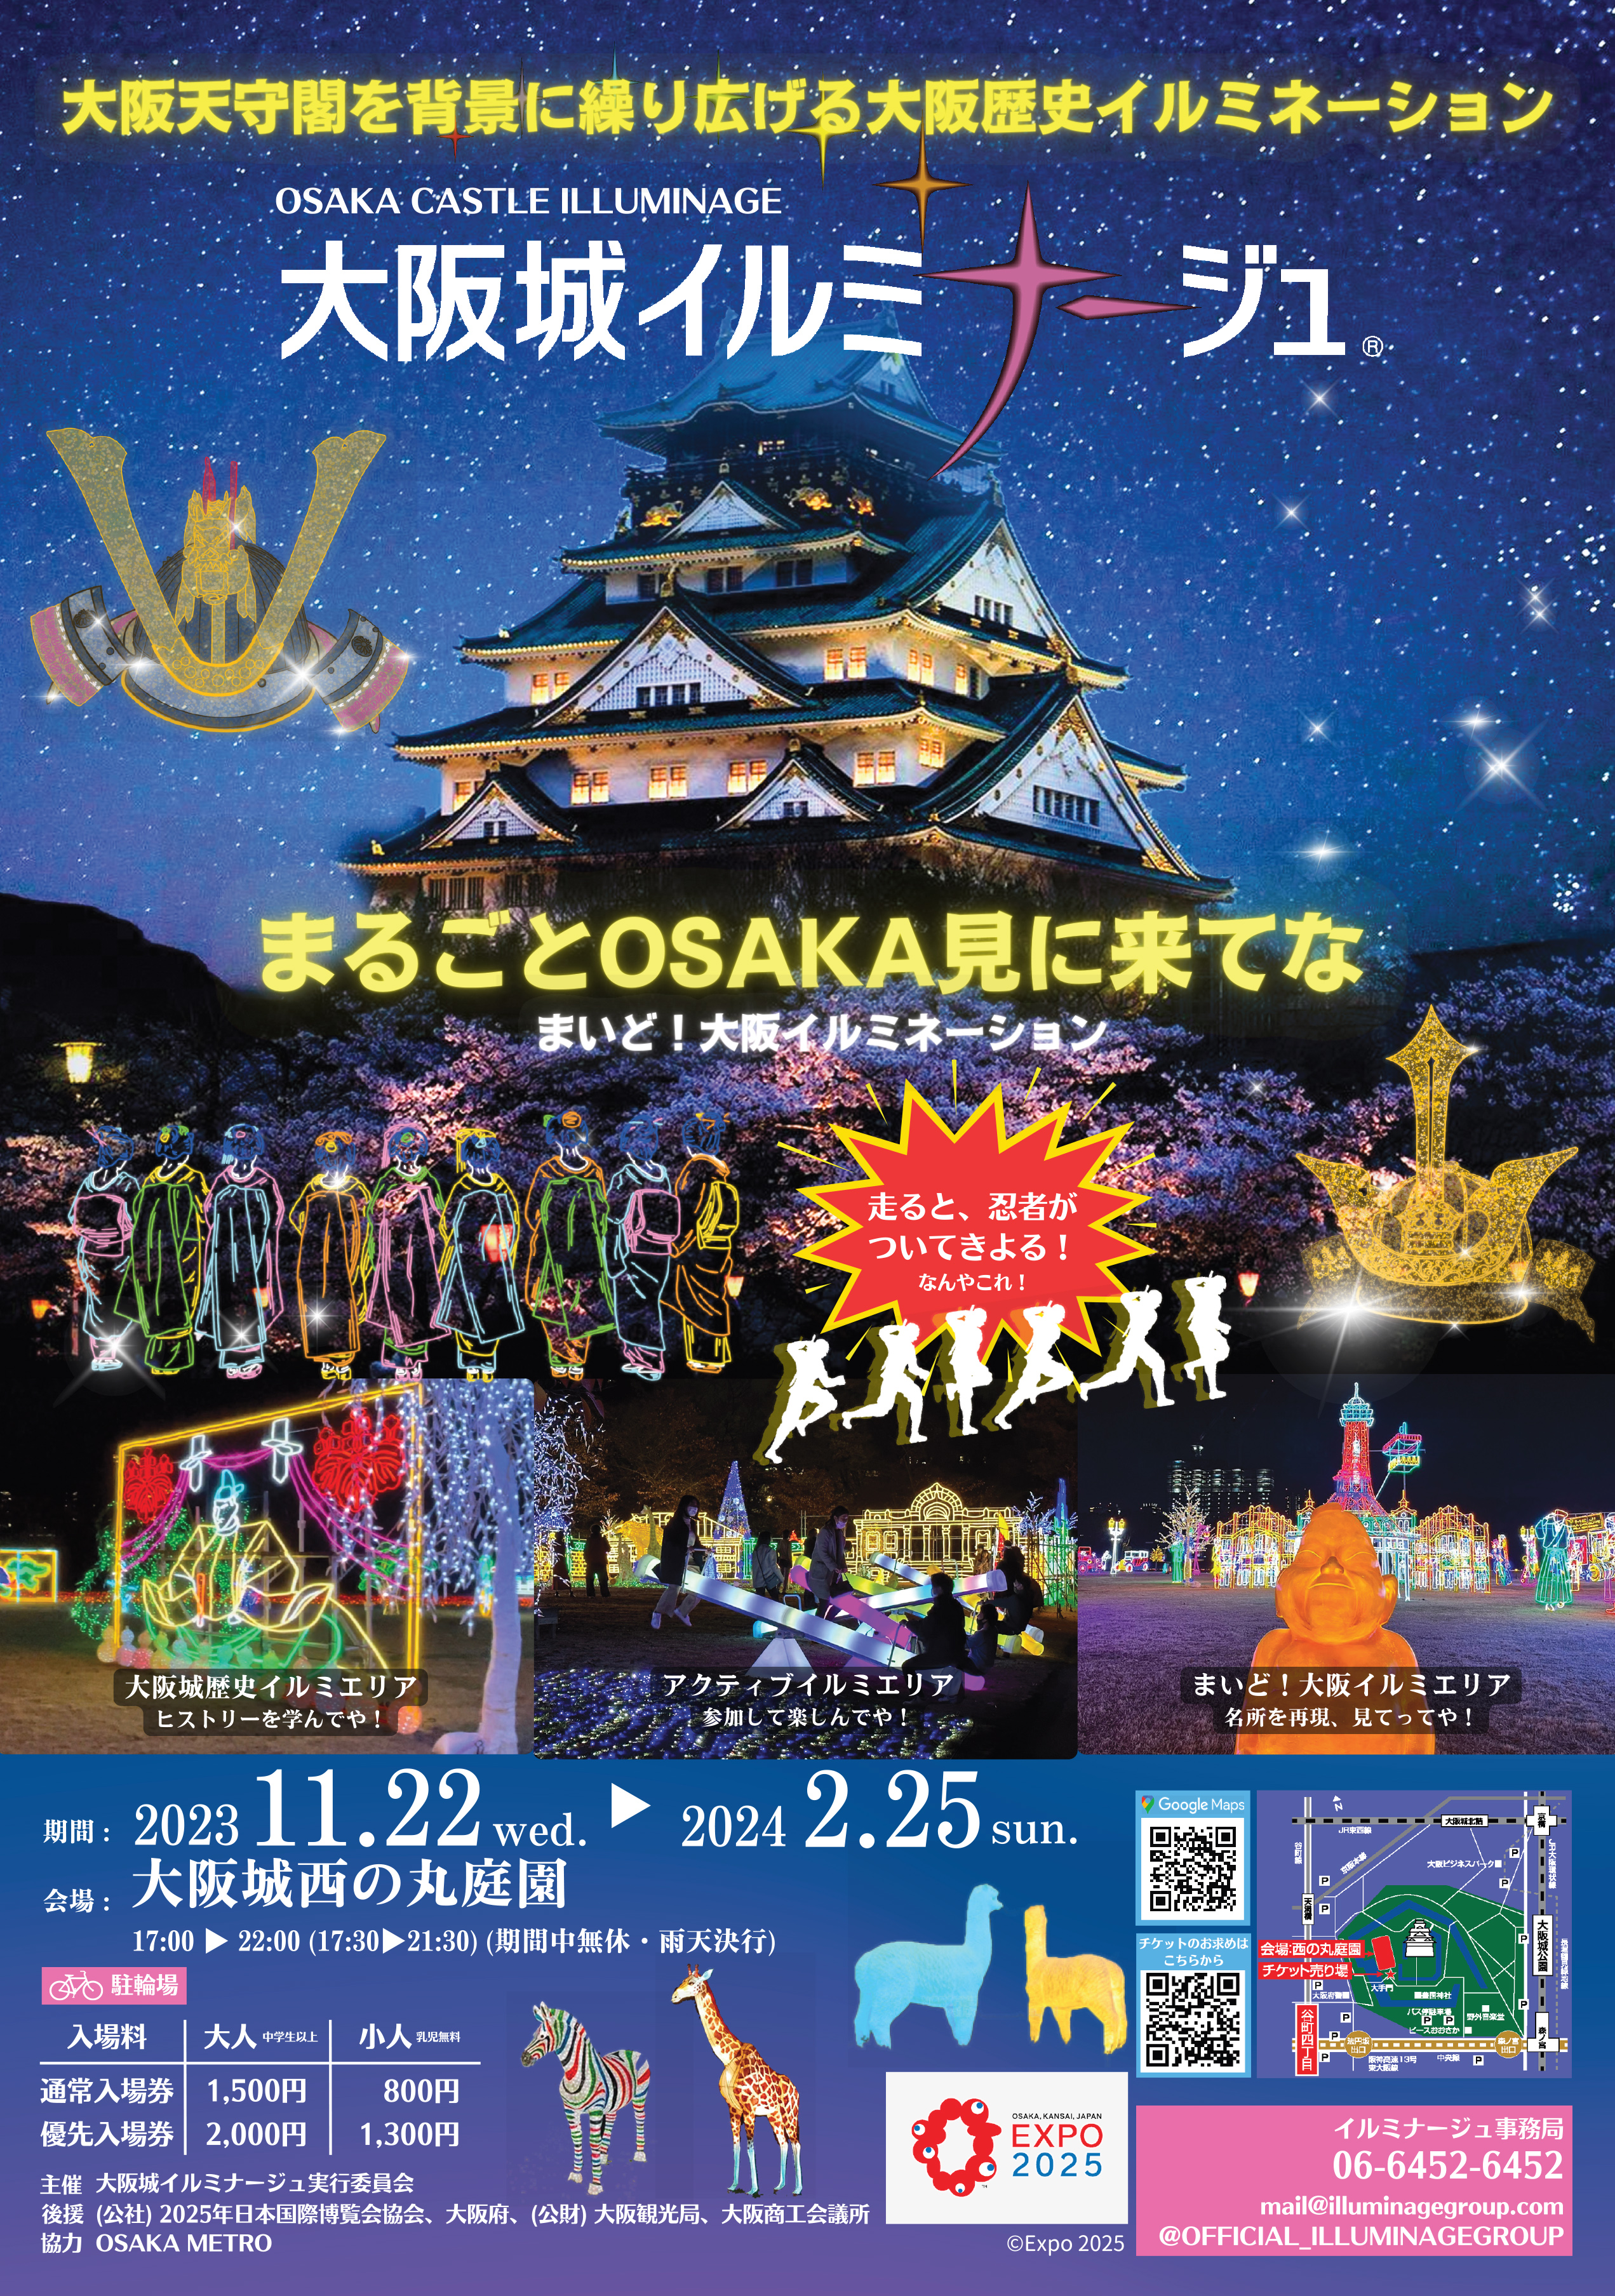 Osaka Castle Illuminage  *LIMITED Time Event